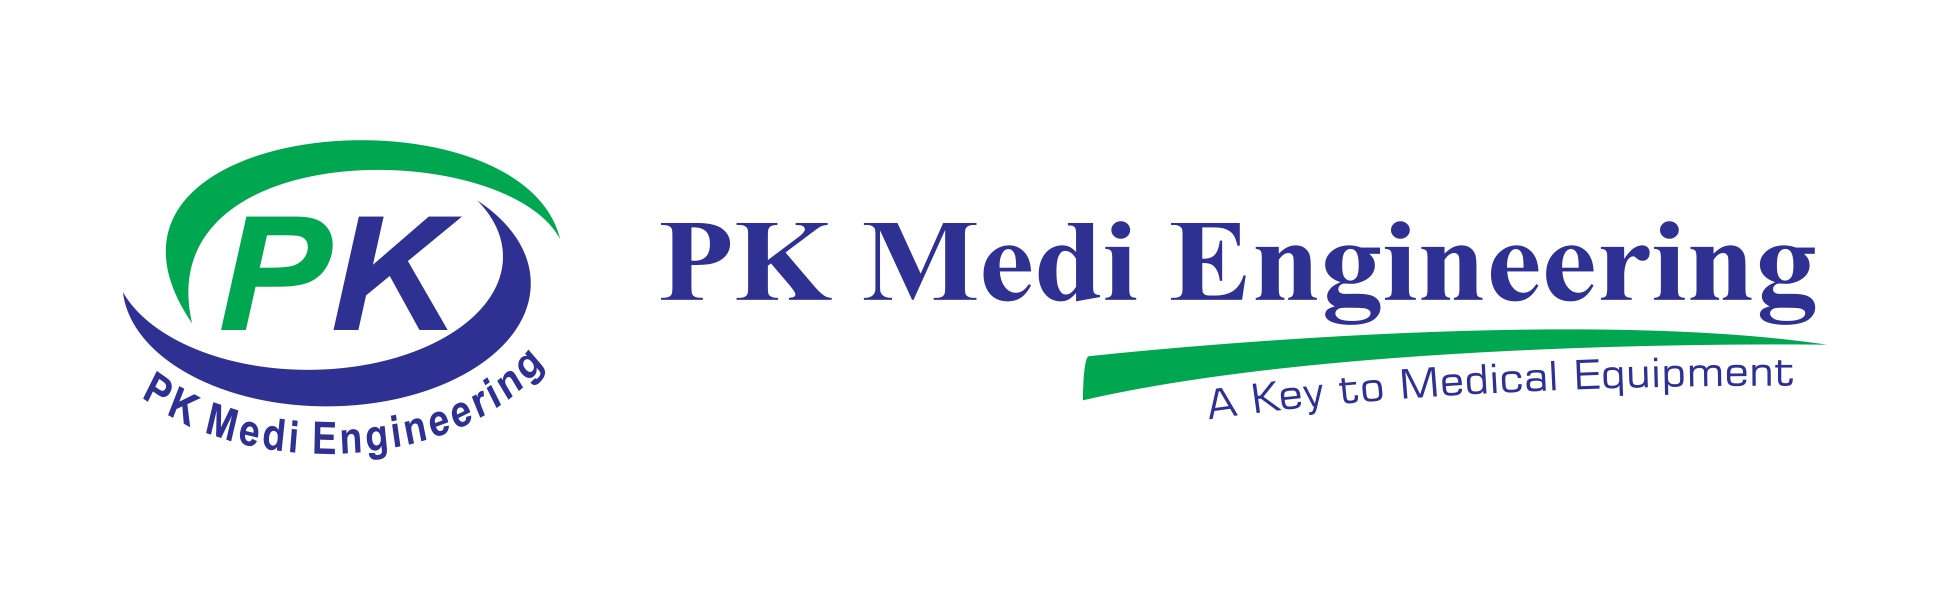 pk medi